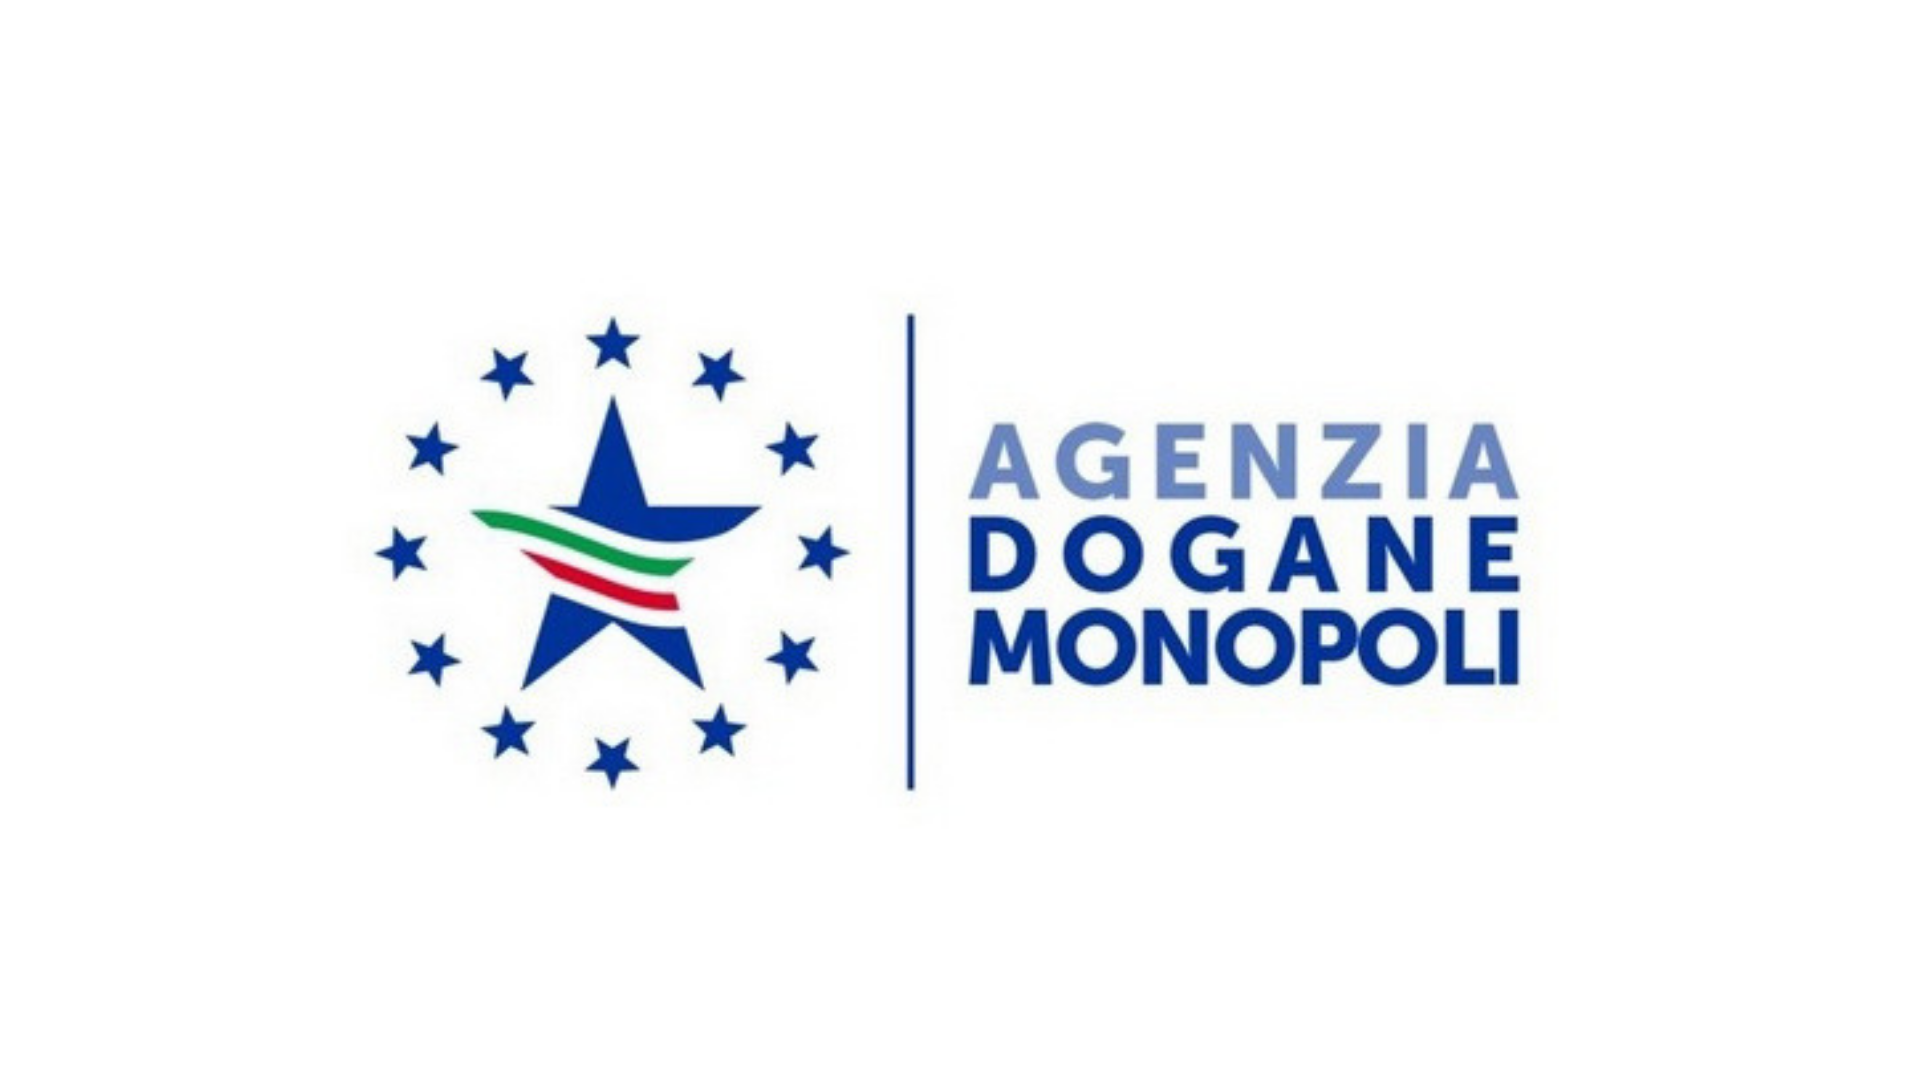 Agenzia Dogane e Monopoli